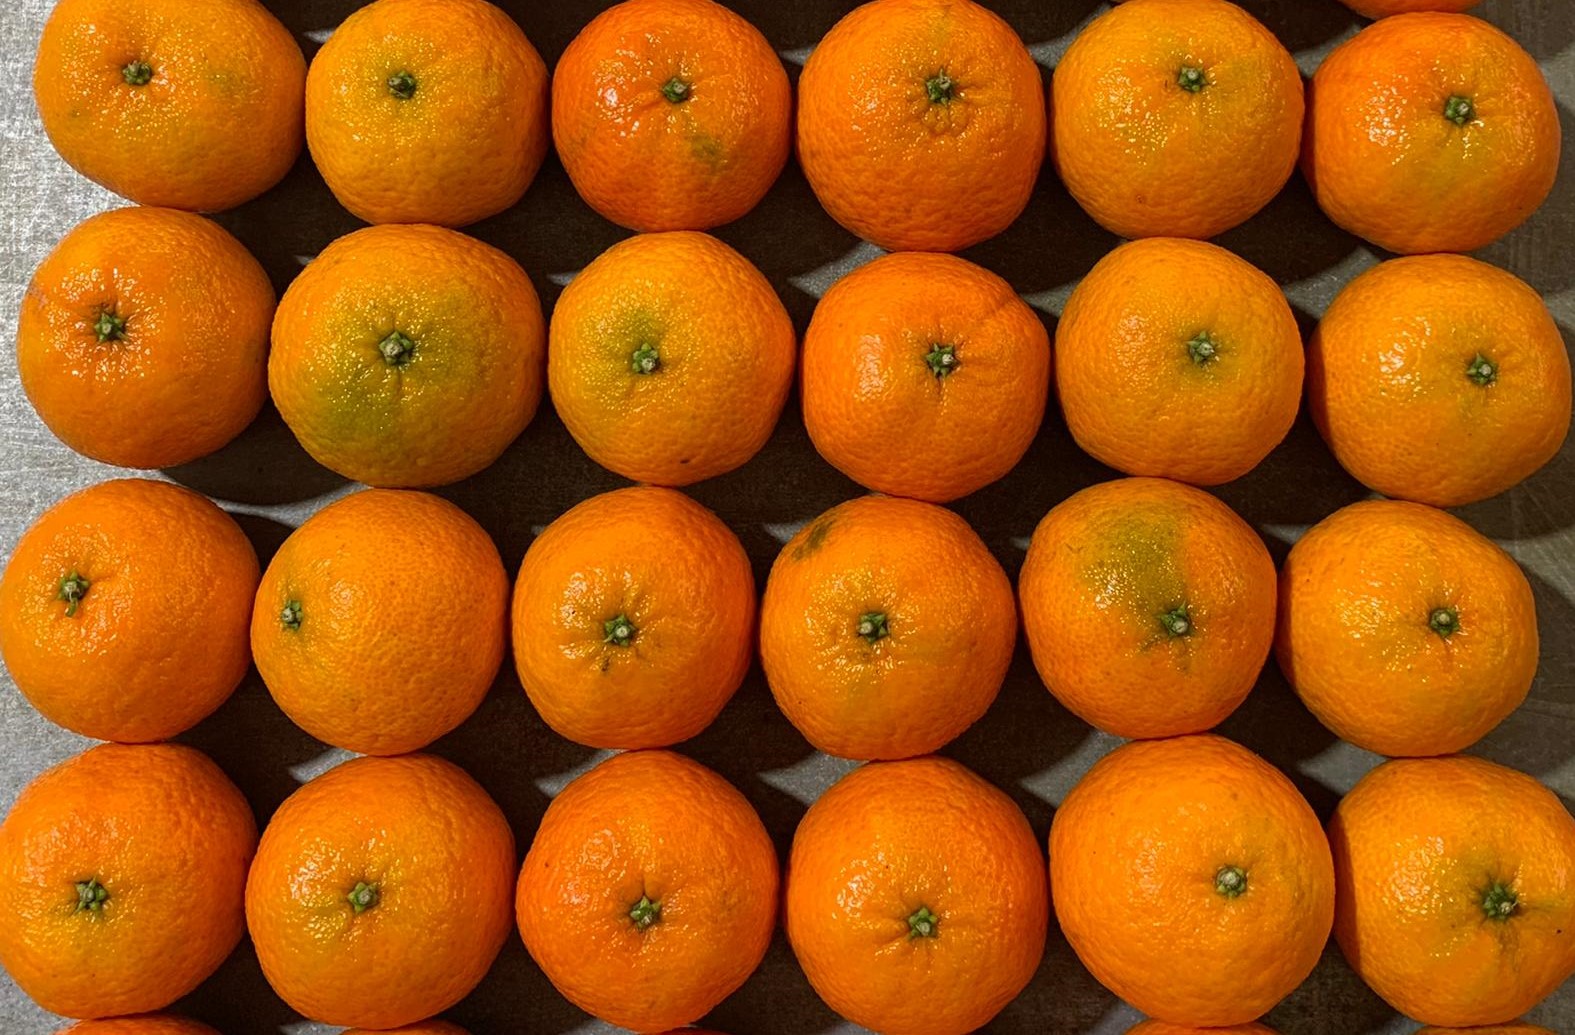 clementine-breadcrumb-agrumi-speciali.jpg